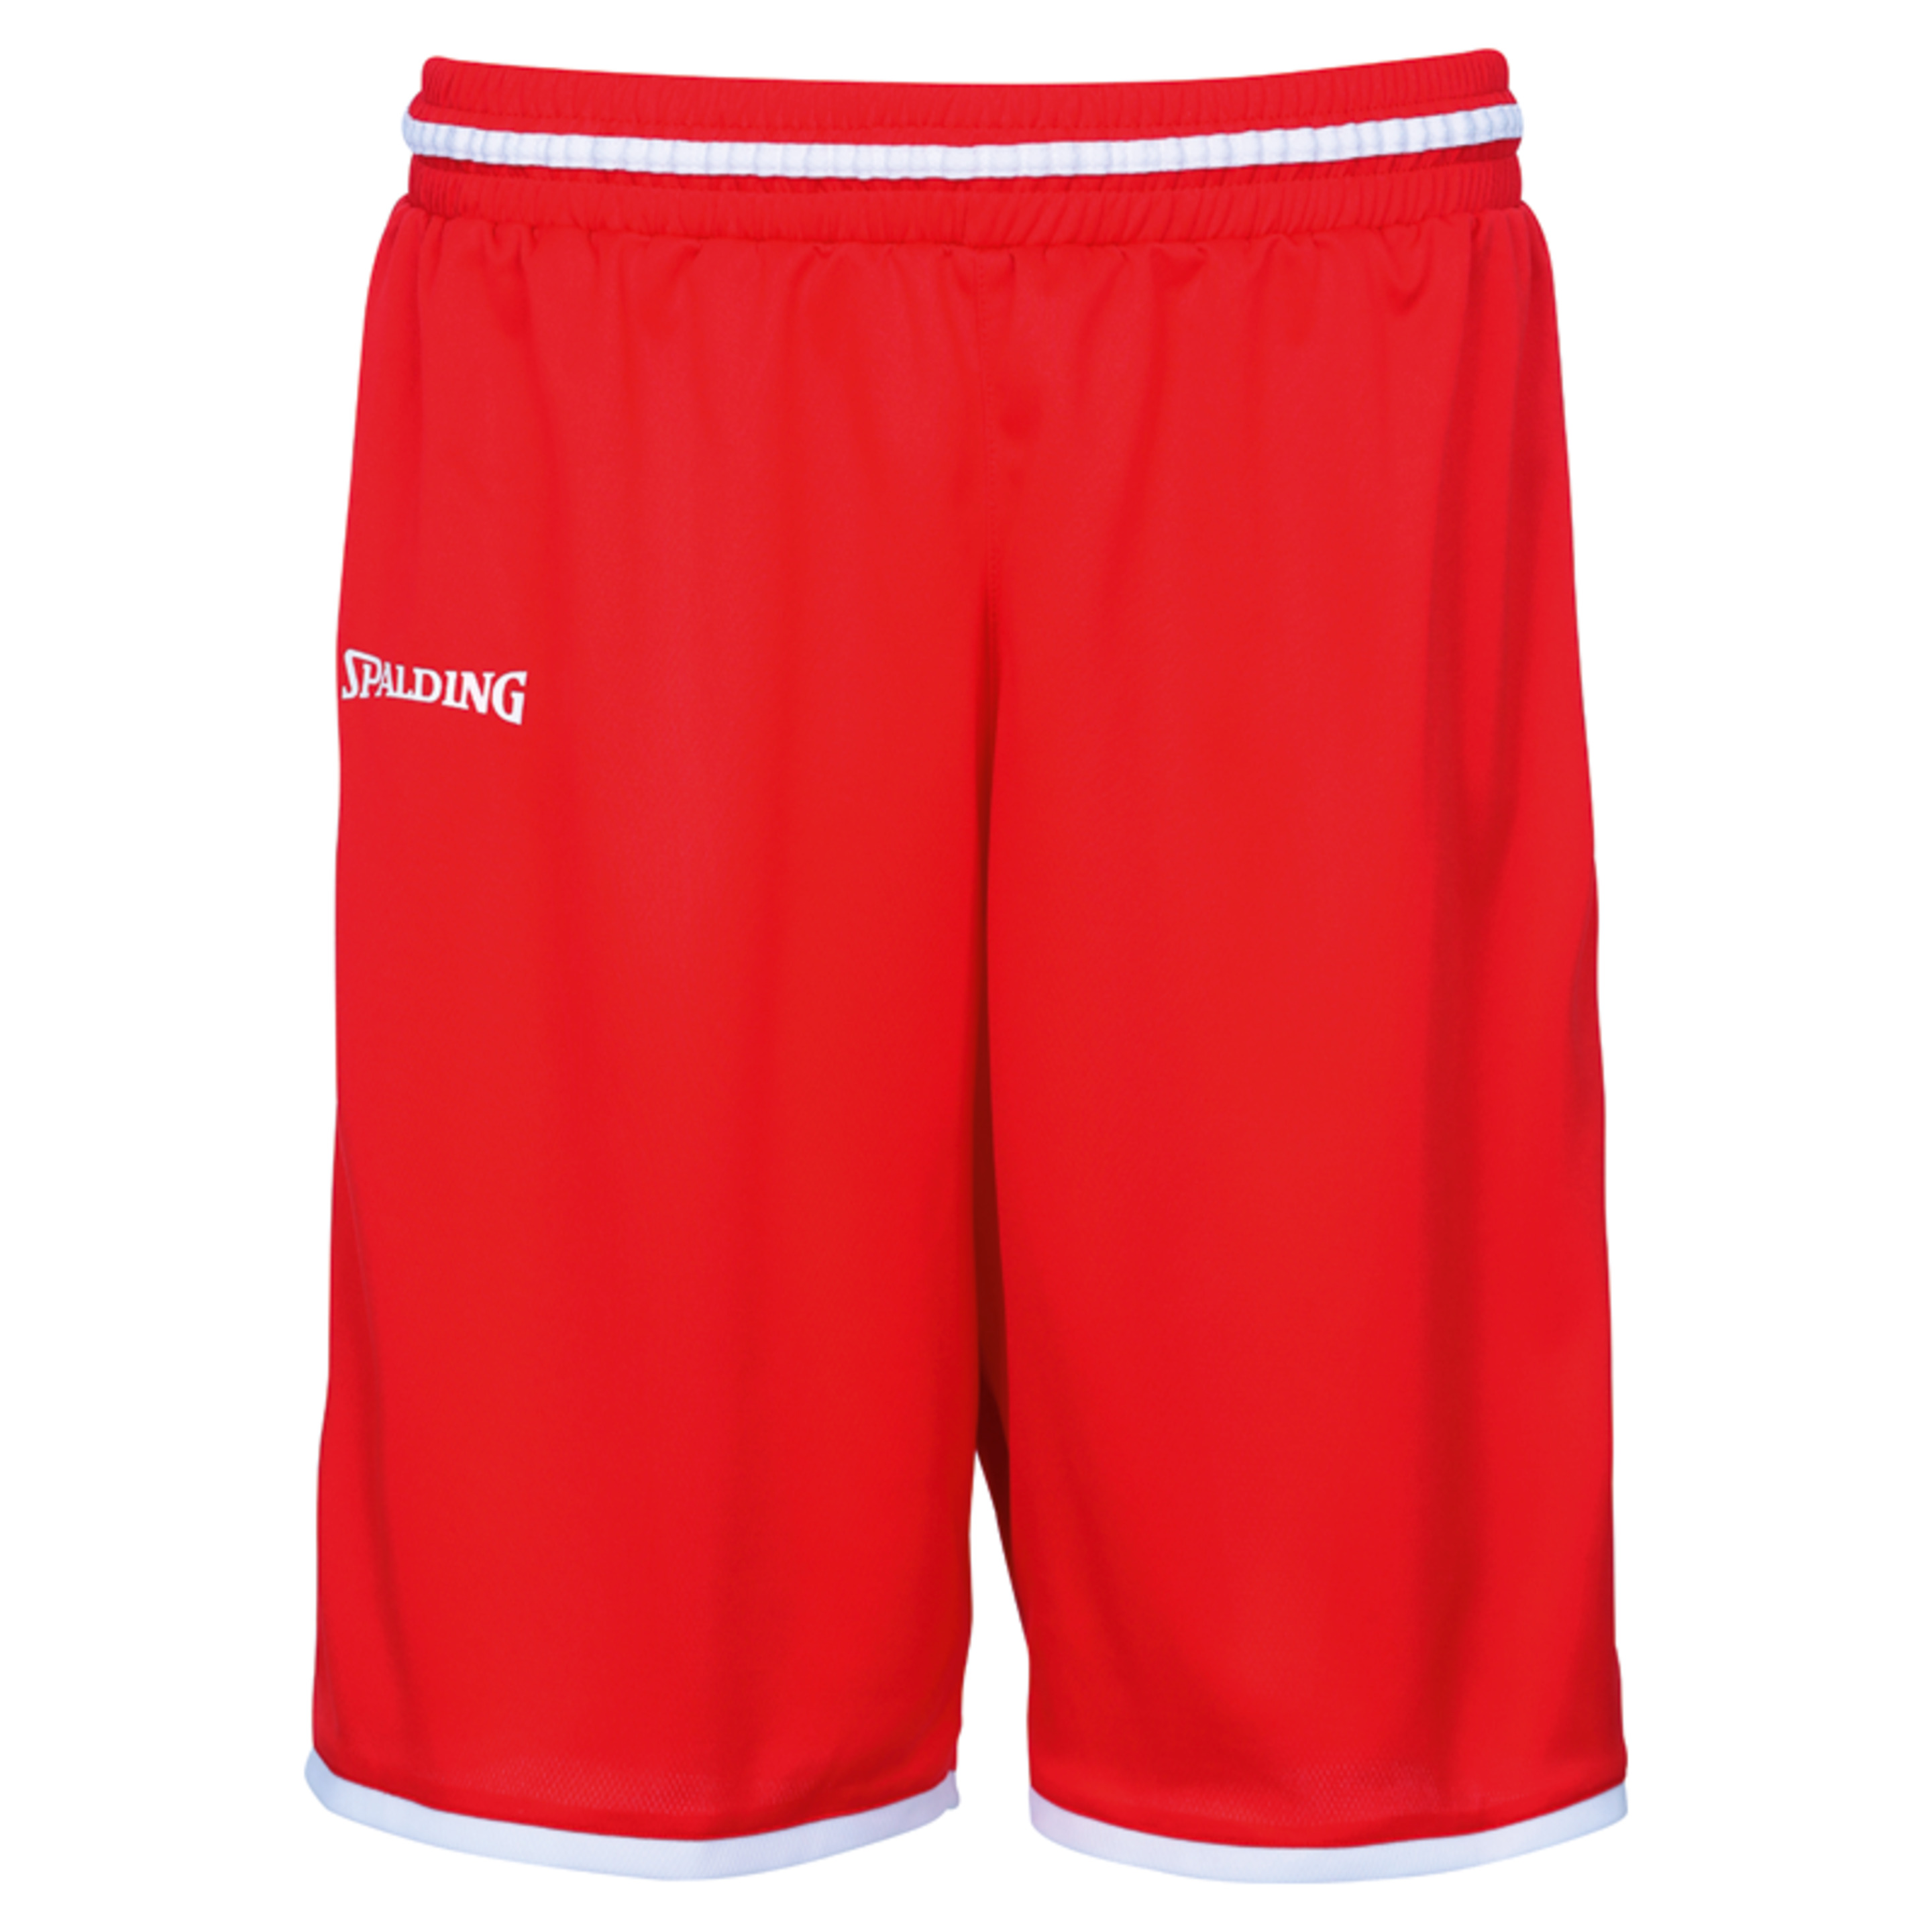 Move Shorts Rojo/blanco Spalding - rojo - 